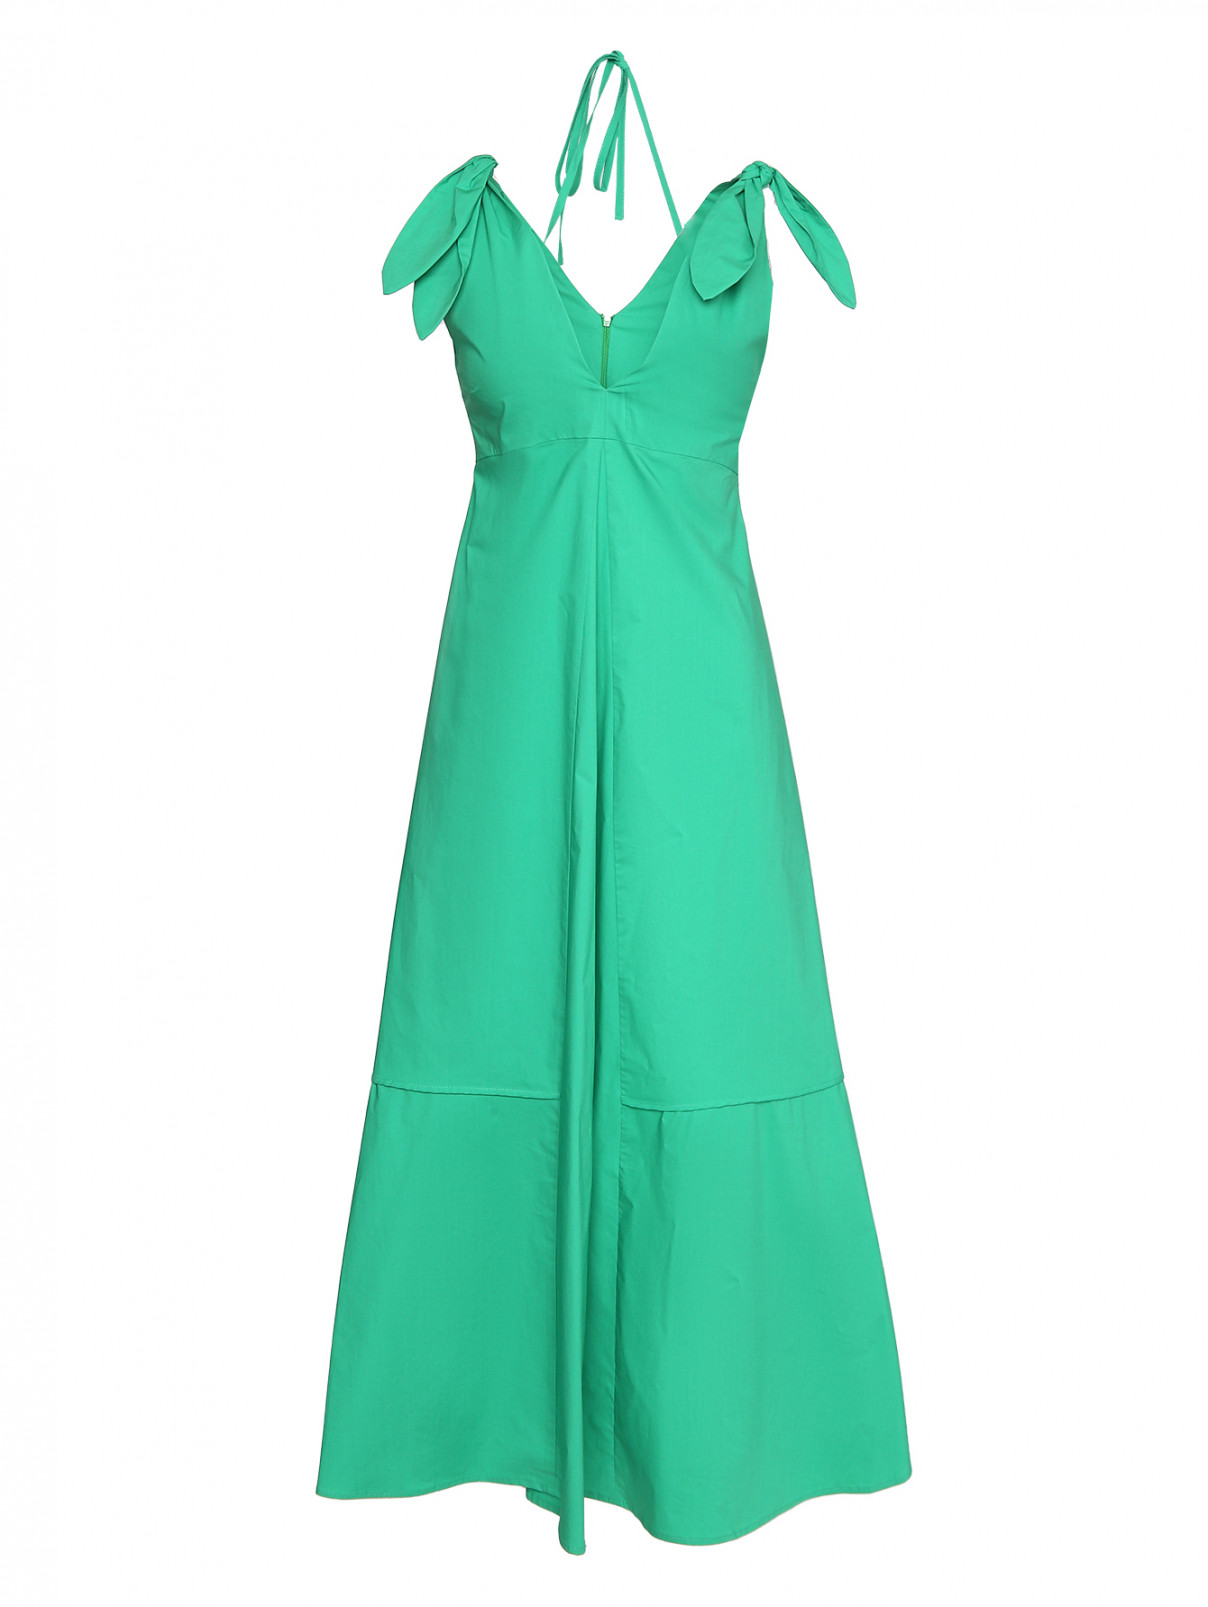 Платье из хлопка на завязках Erika Cavallini  –  Общий вид  – Цвет:  Зеленый